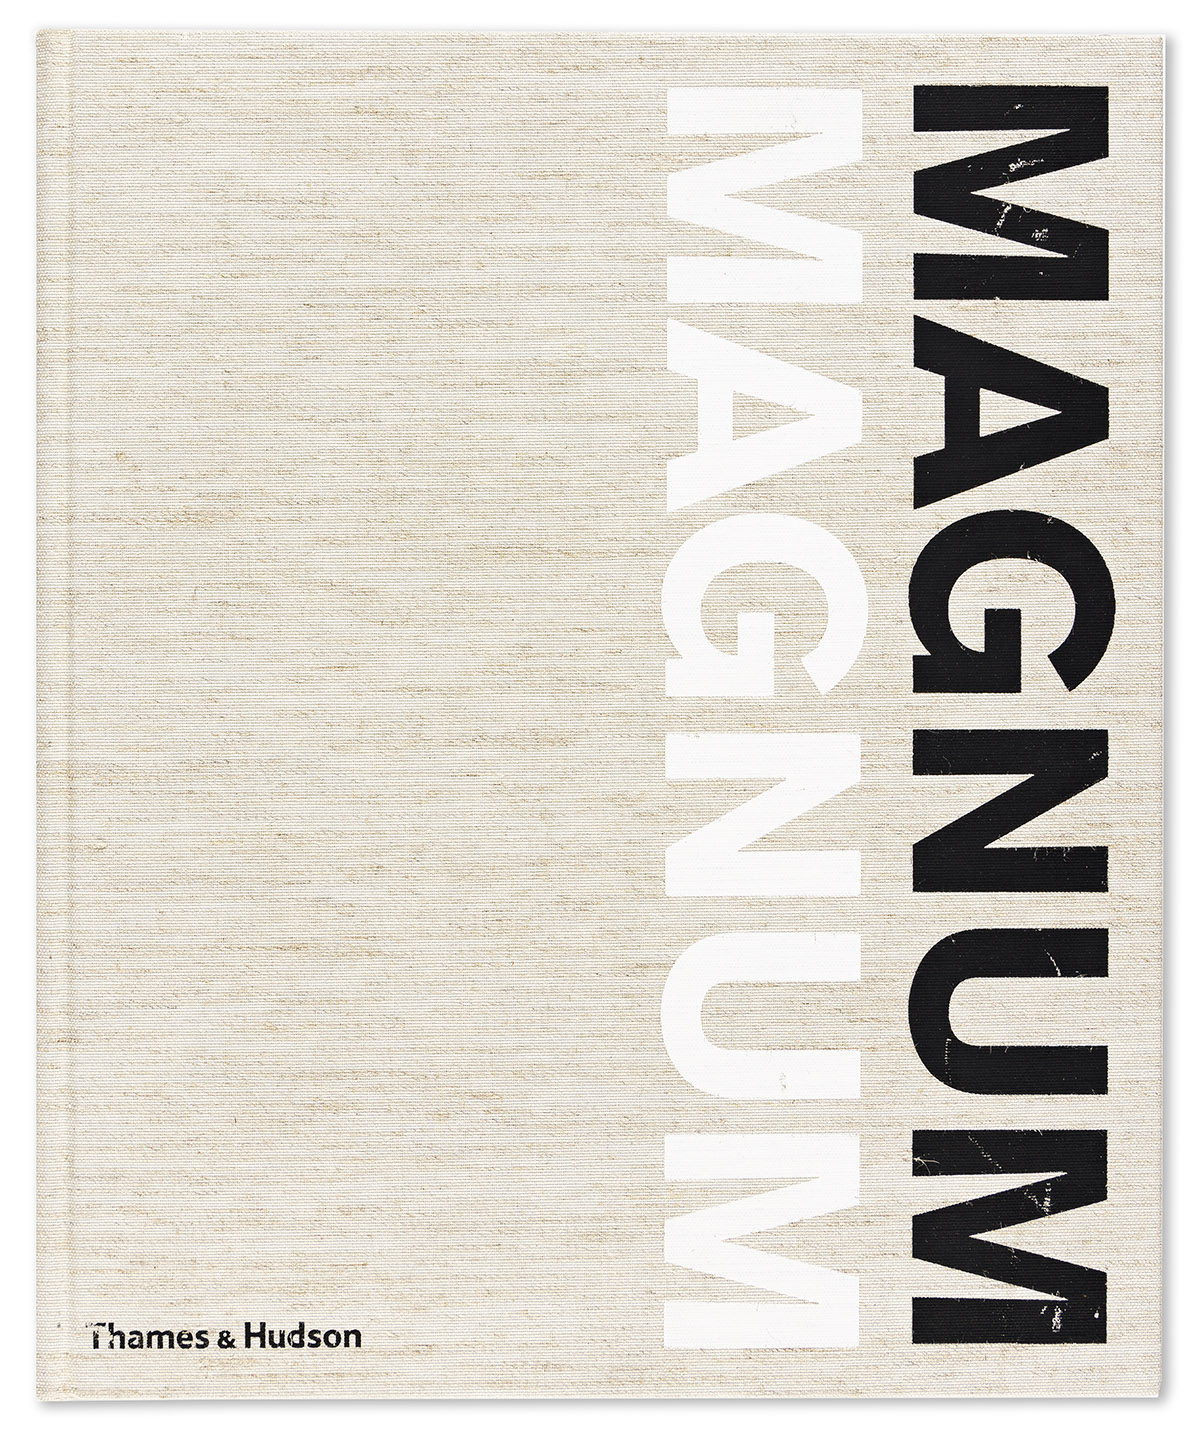 (MAGNUM PHOTOS) Magnum Magnum.